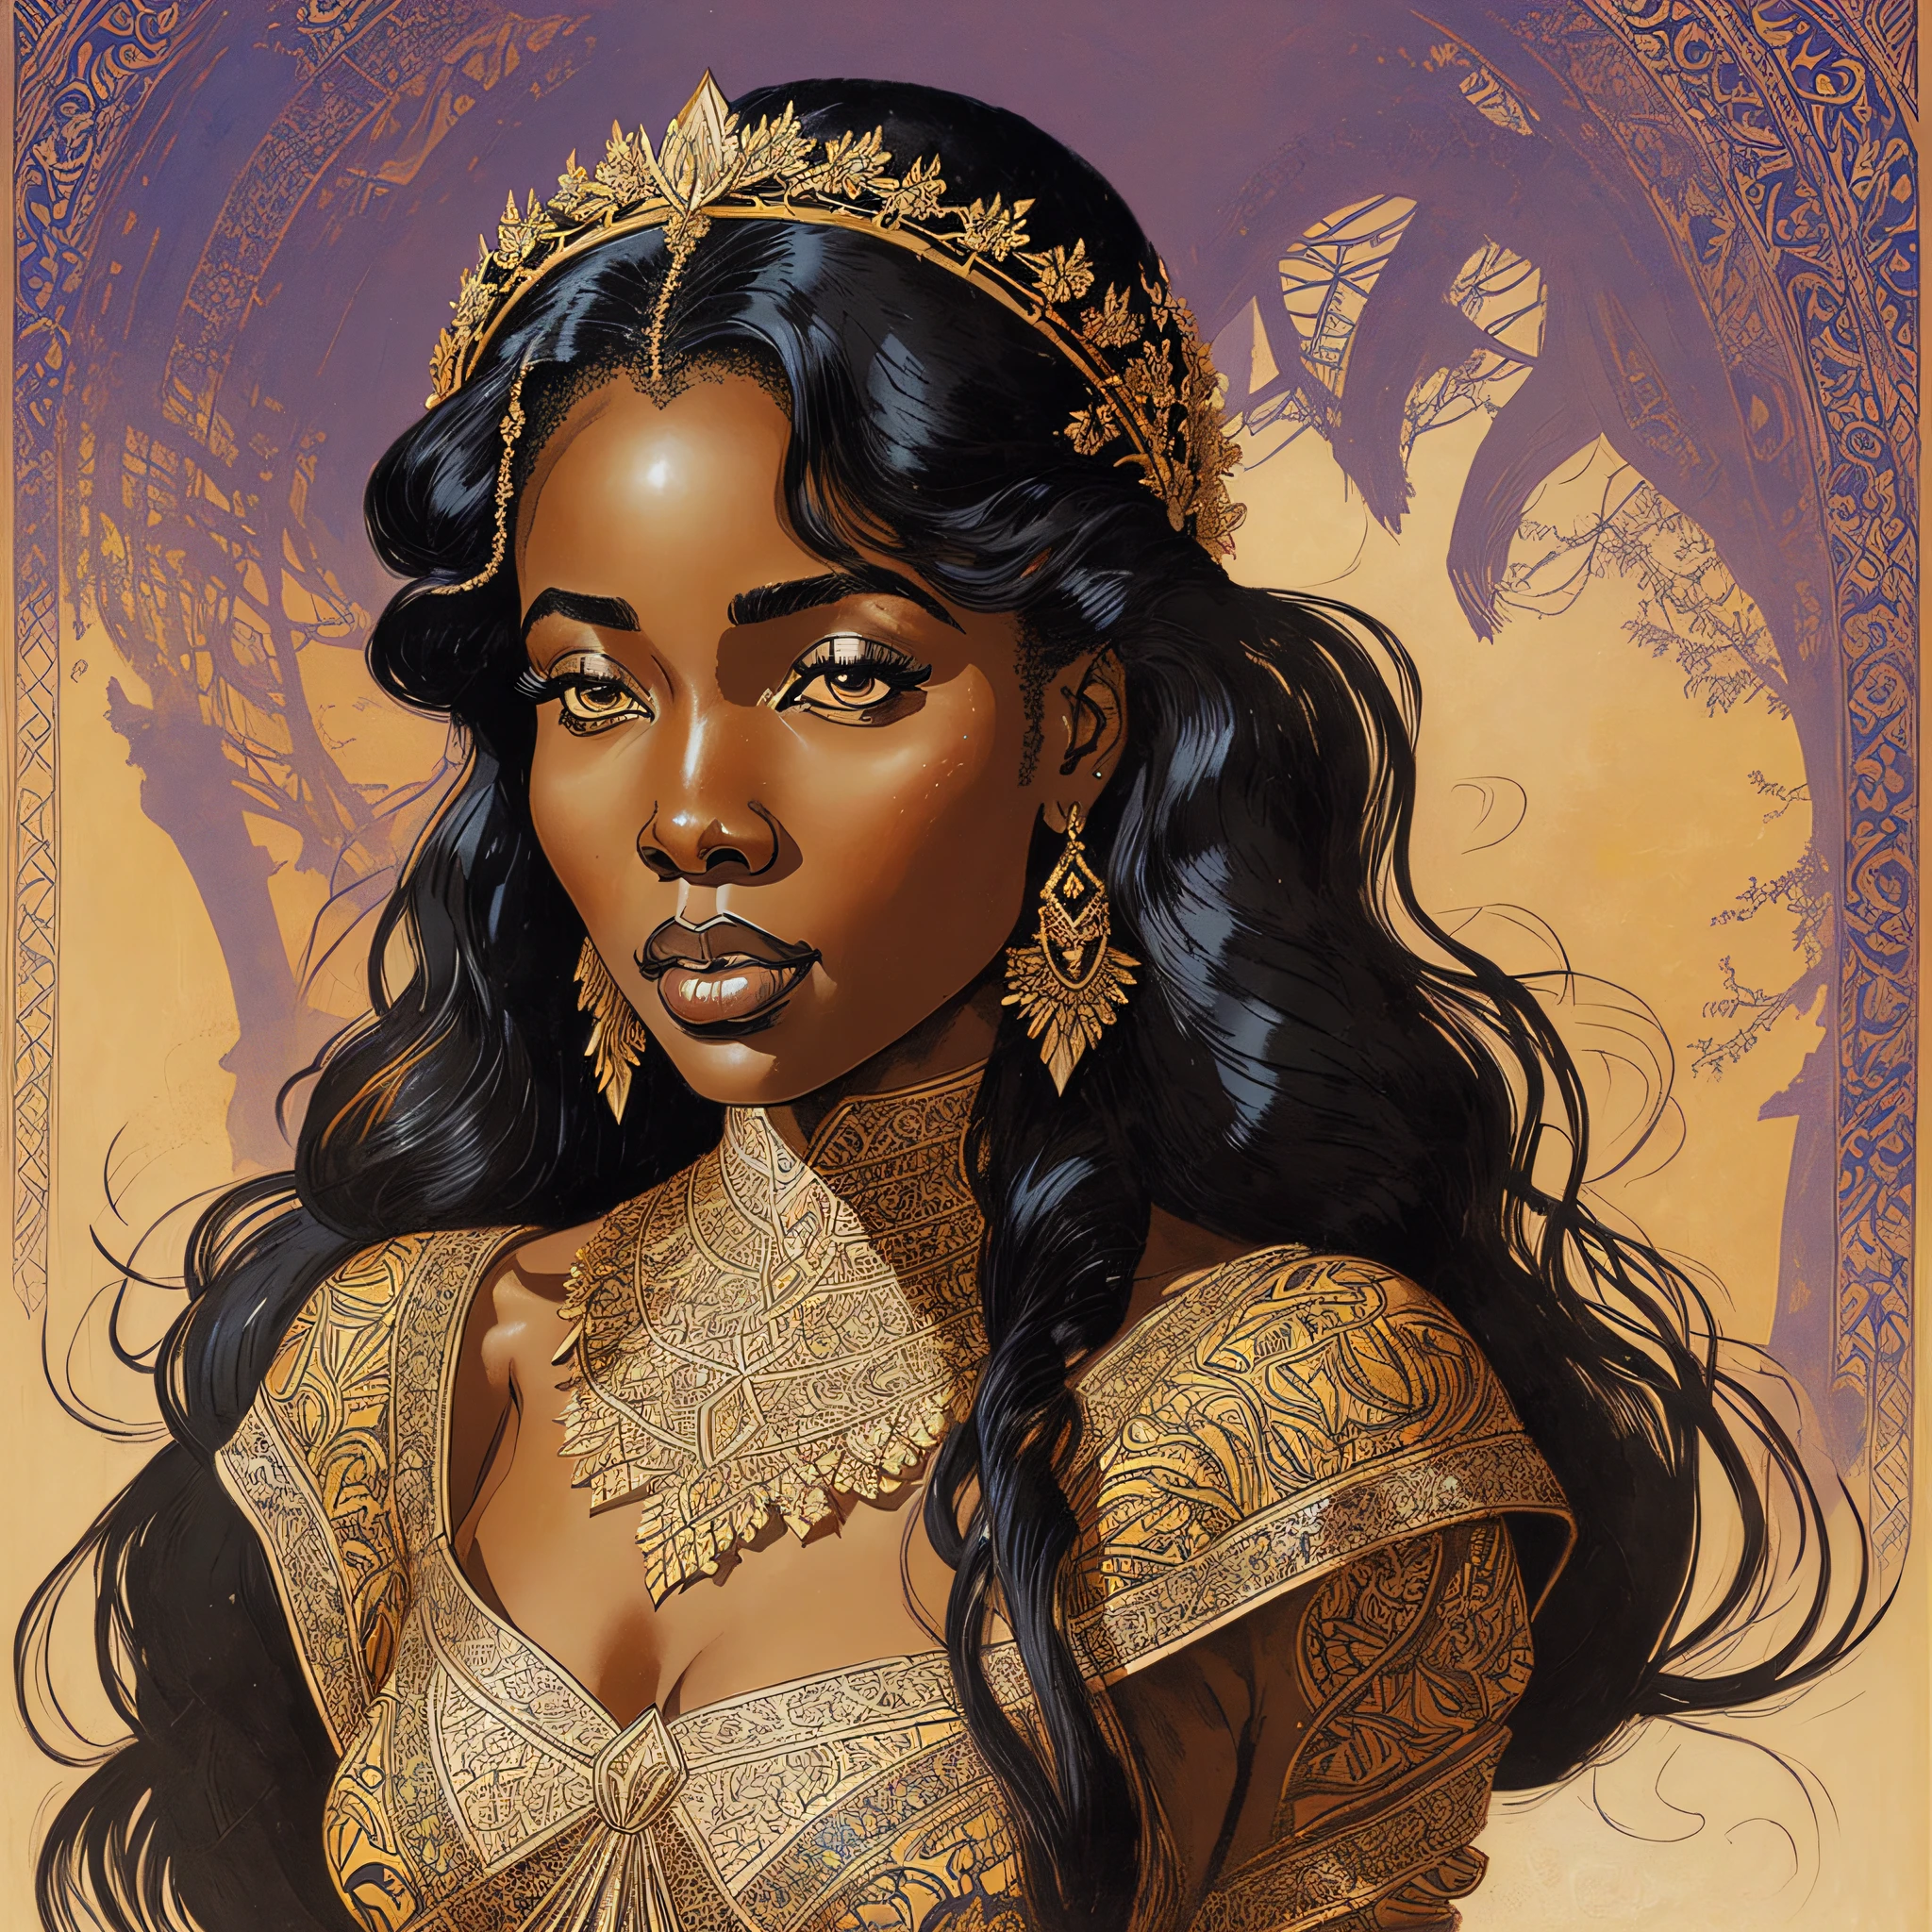 美しい若いアフリカの女王, heaだ anだ shoulだers portrait, マイロ・マナラ著, 2 0 0 0 ヴィンテージ ゴシック イラスト, だ & だ, ファンタジー, 複雑な, エレガント, highly だetaileだ, だigital painting, アートステーション, コンセプトアート, スムーズ, シャープなフォーカス, --auto --s2